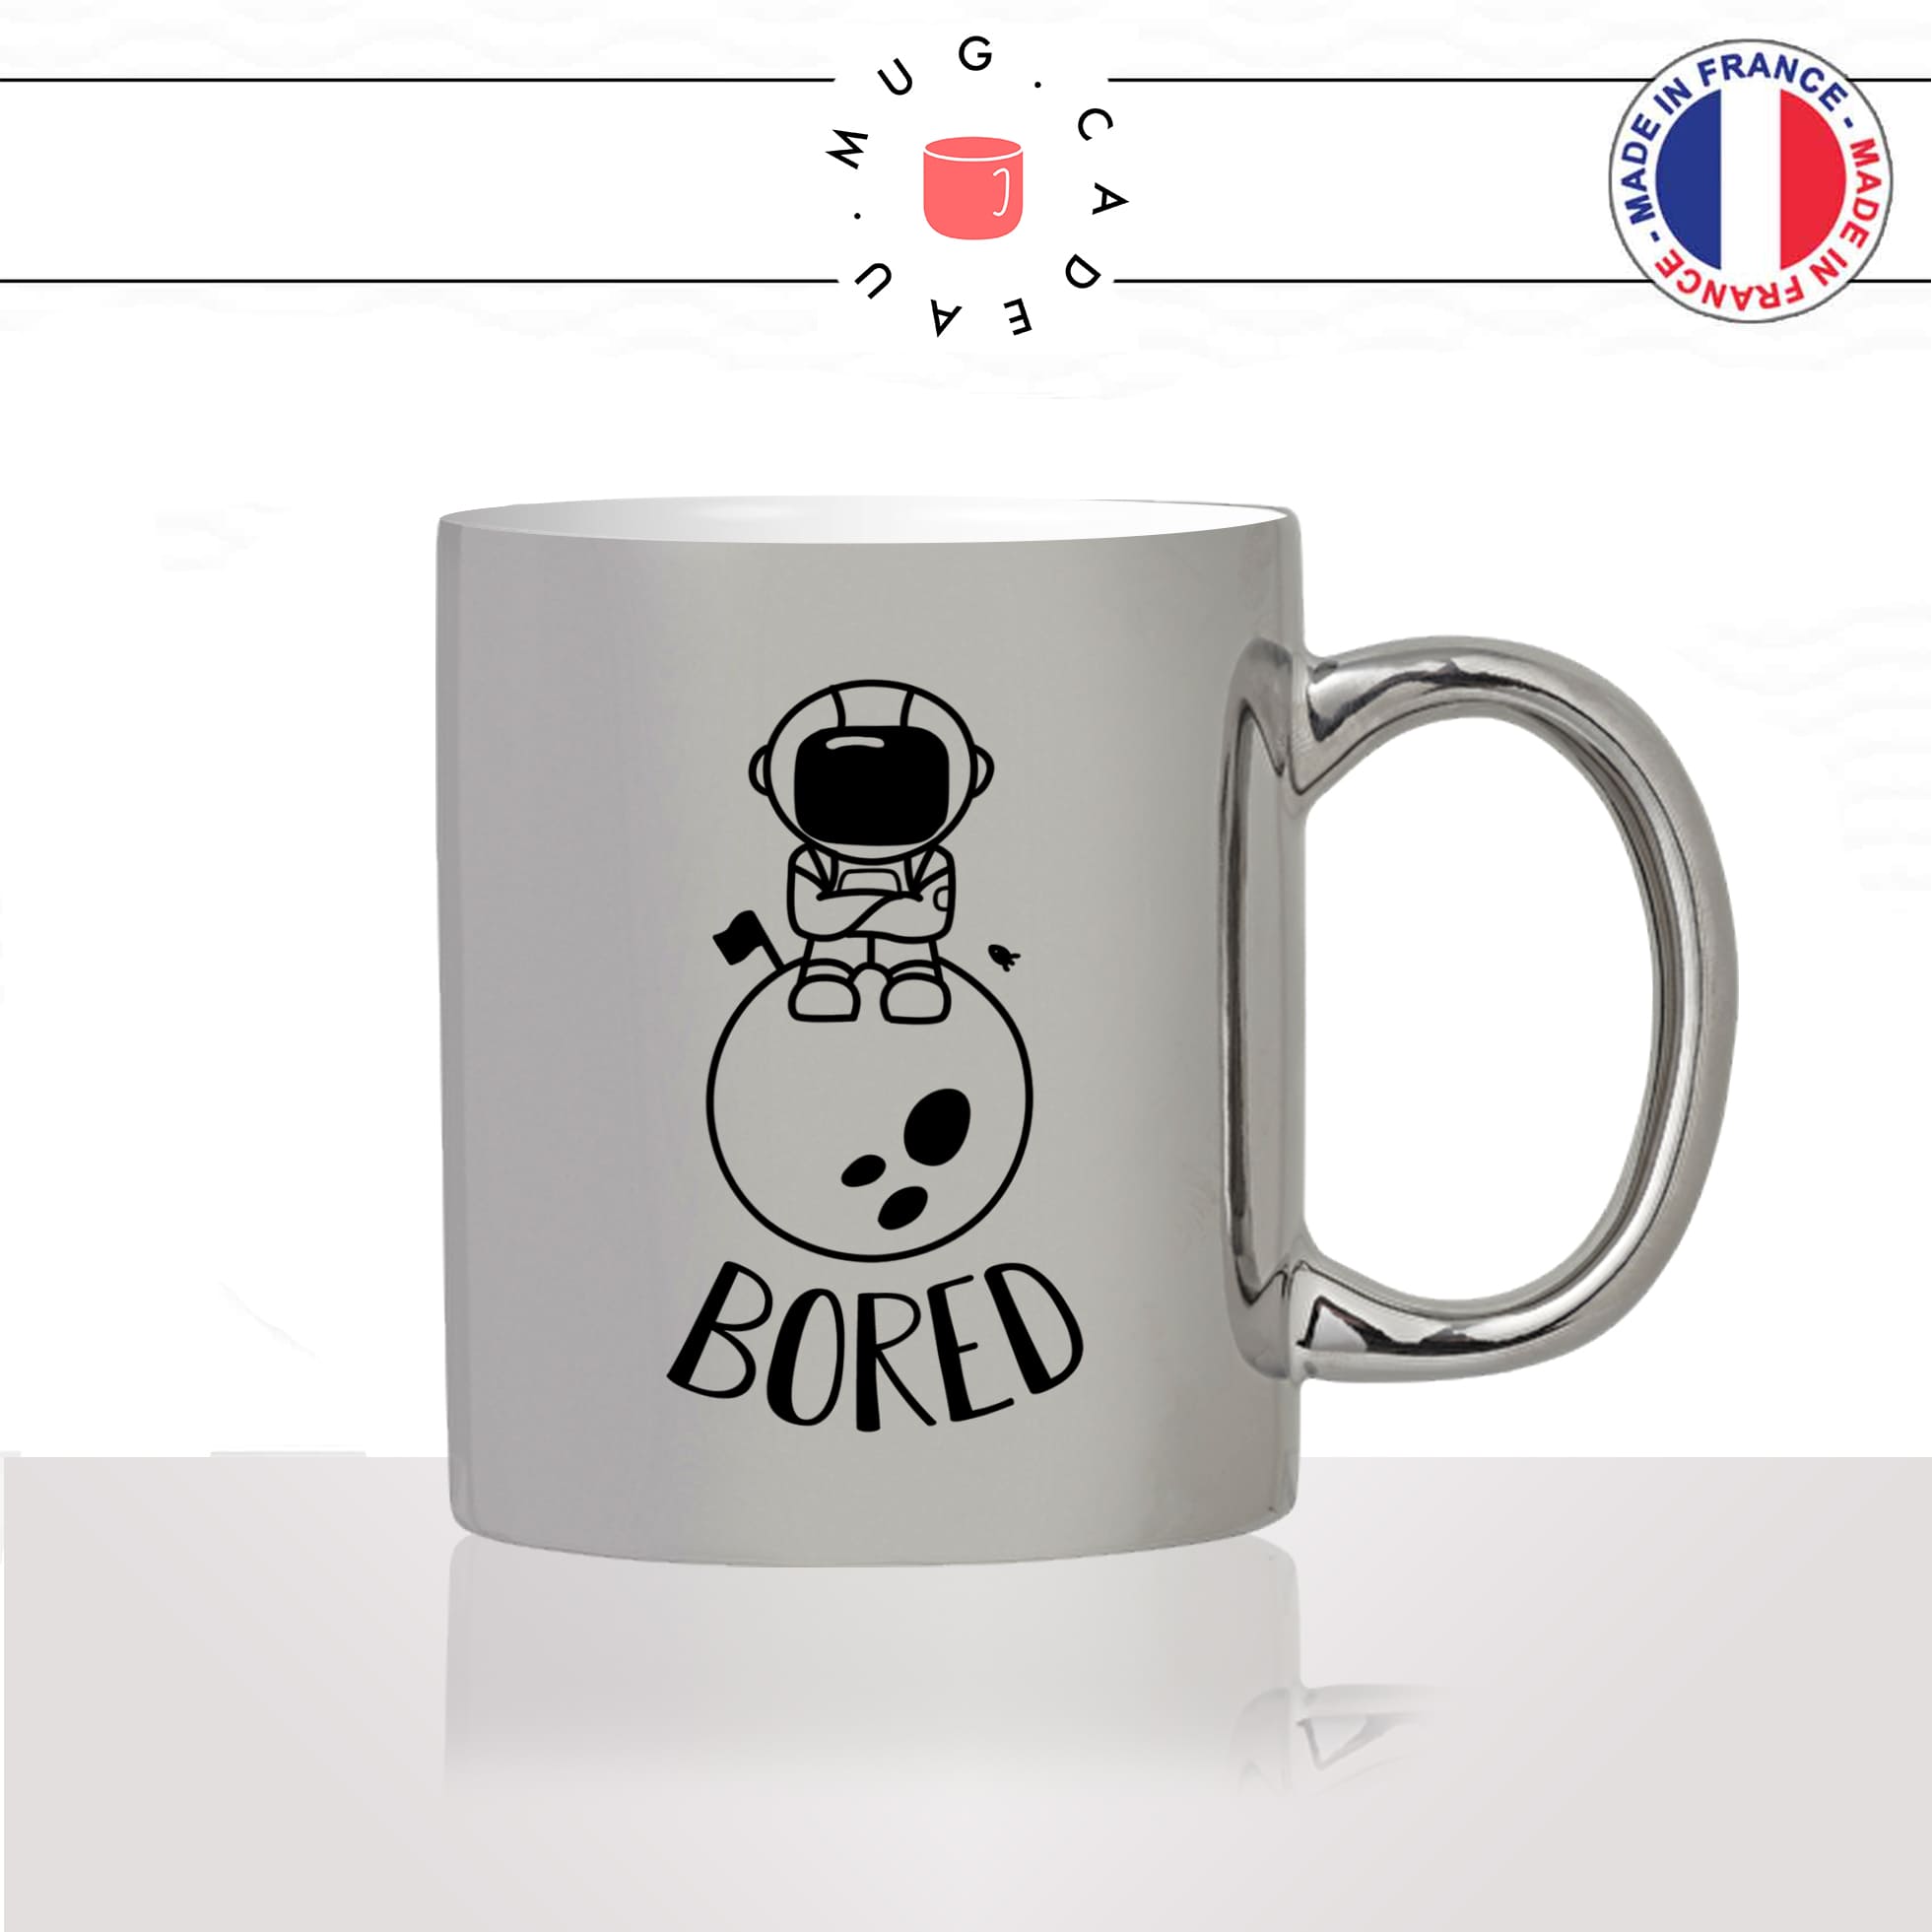 mug-tasse-argent-argenté-silver-espace-astronaute-lune-fusée-bored-ennui-engin-spacial-planetes-humour-idée-cadeau-fun-cool-café-thé2